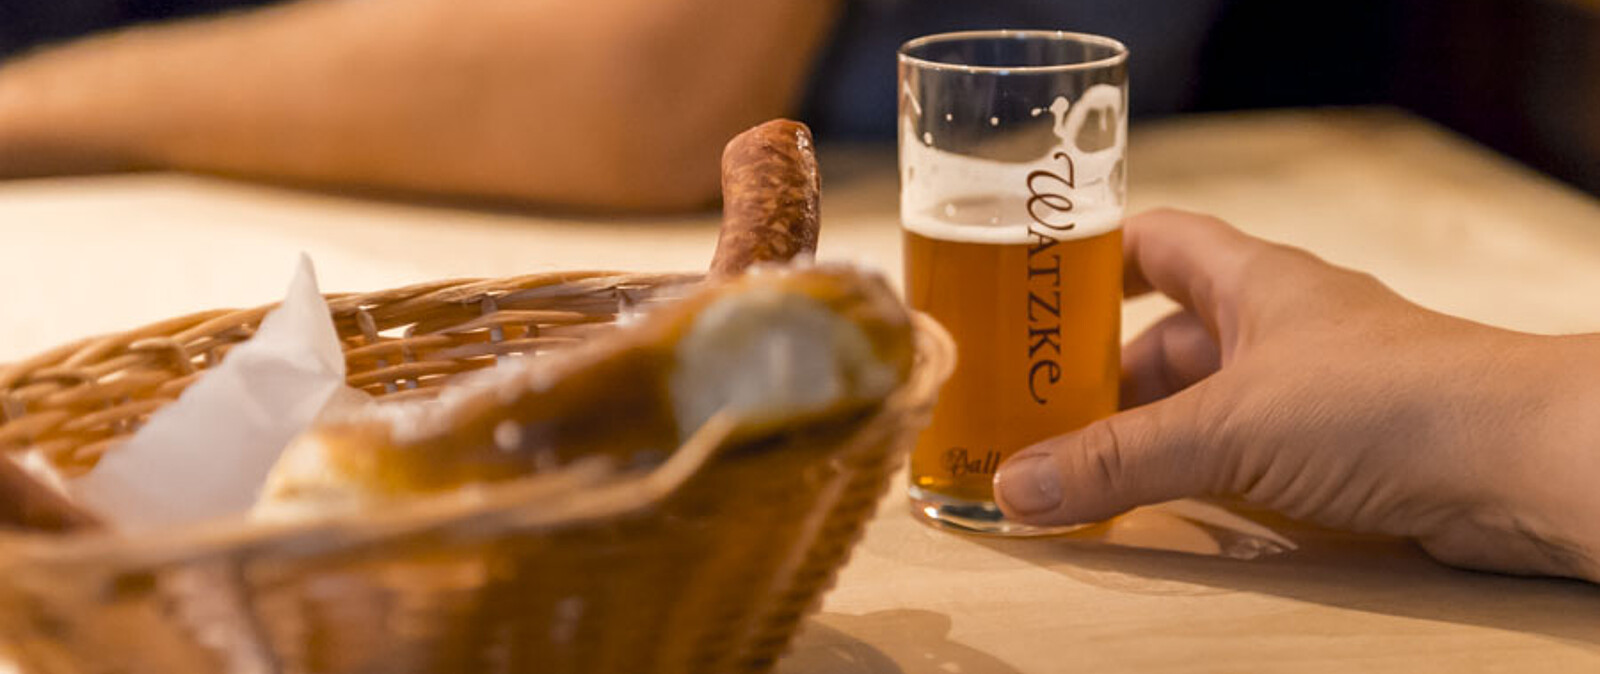 Sachsens Brauereien gehören zu den Besten. Und dies erleben Sie zu Ihrer Weihnachtsfeier mit unserem Braumeister.